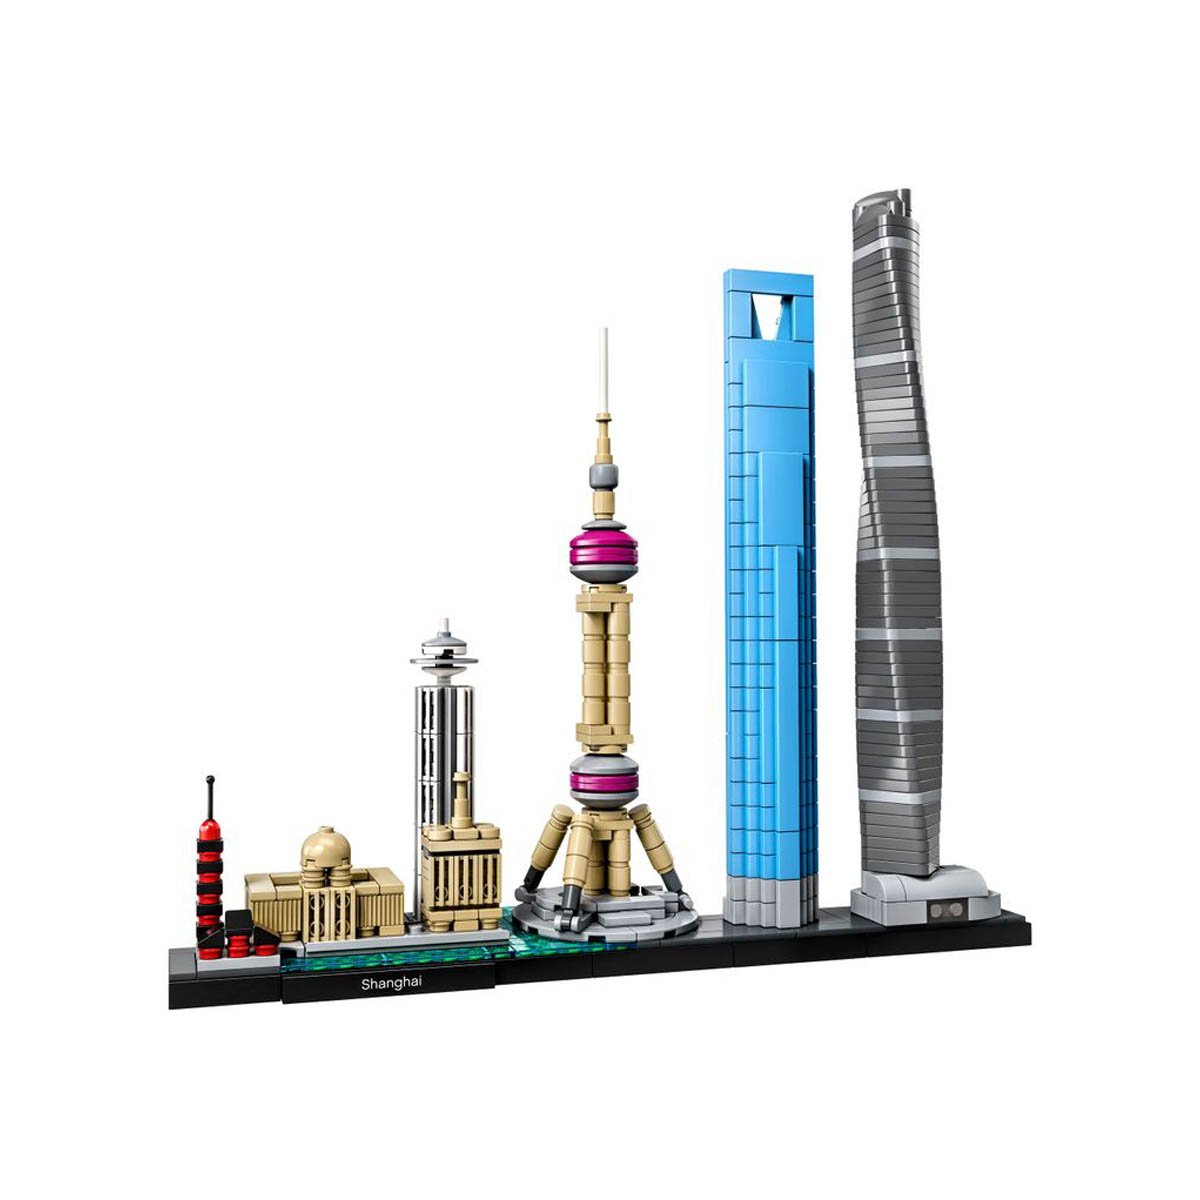 Shanghái Lego